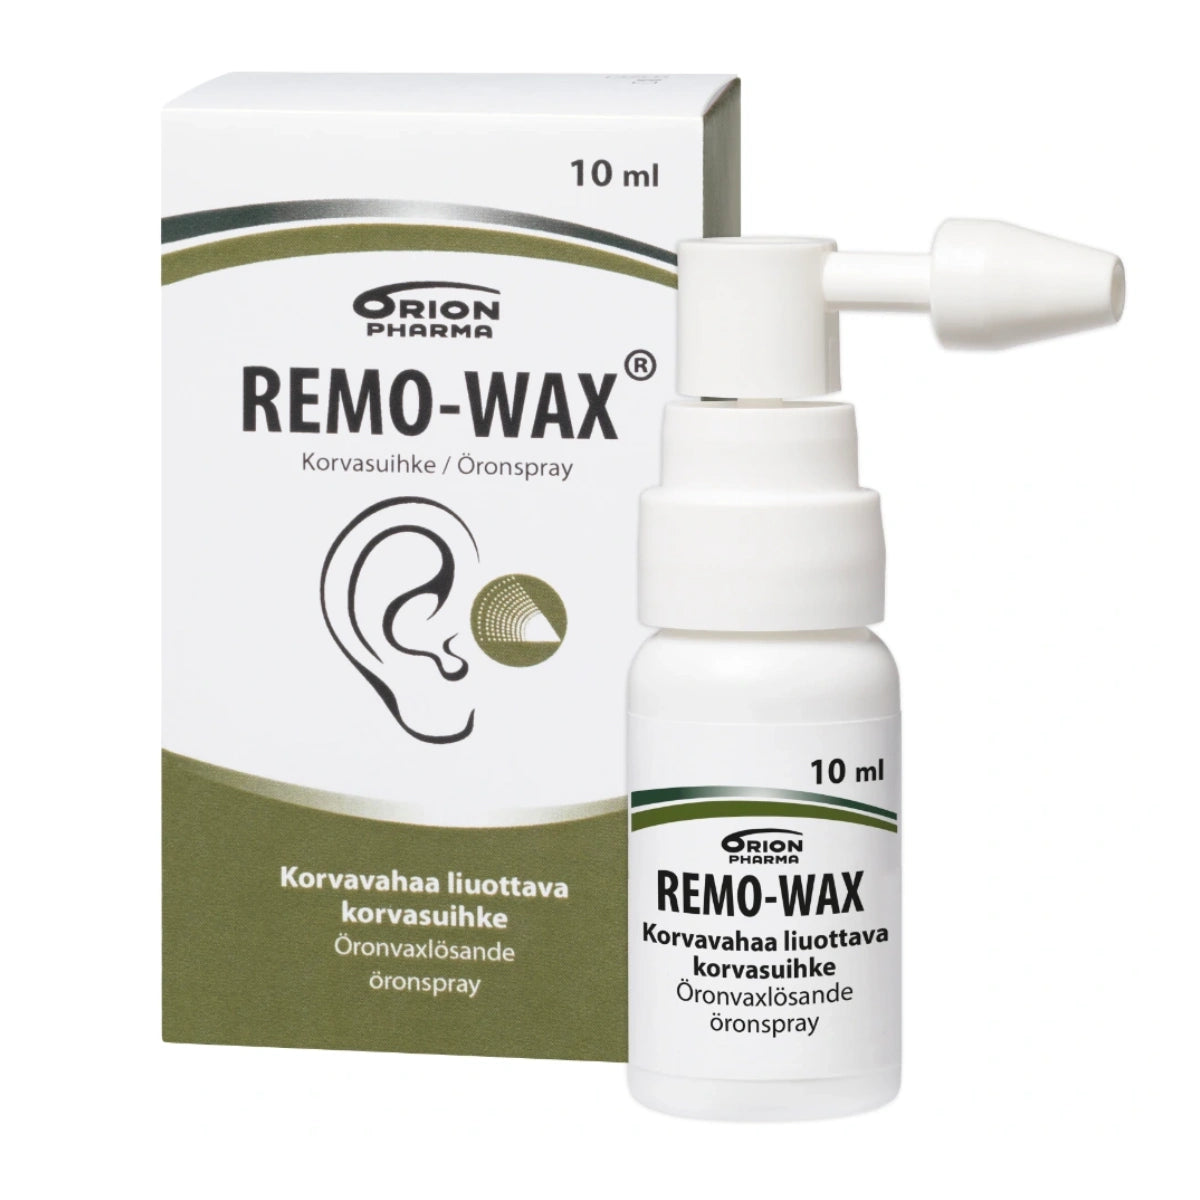 REMO-WAX korvasuihke 10 ml liuottaa korvan vahatulpat nopeasti ja tehokkaasti